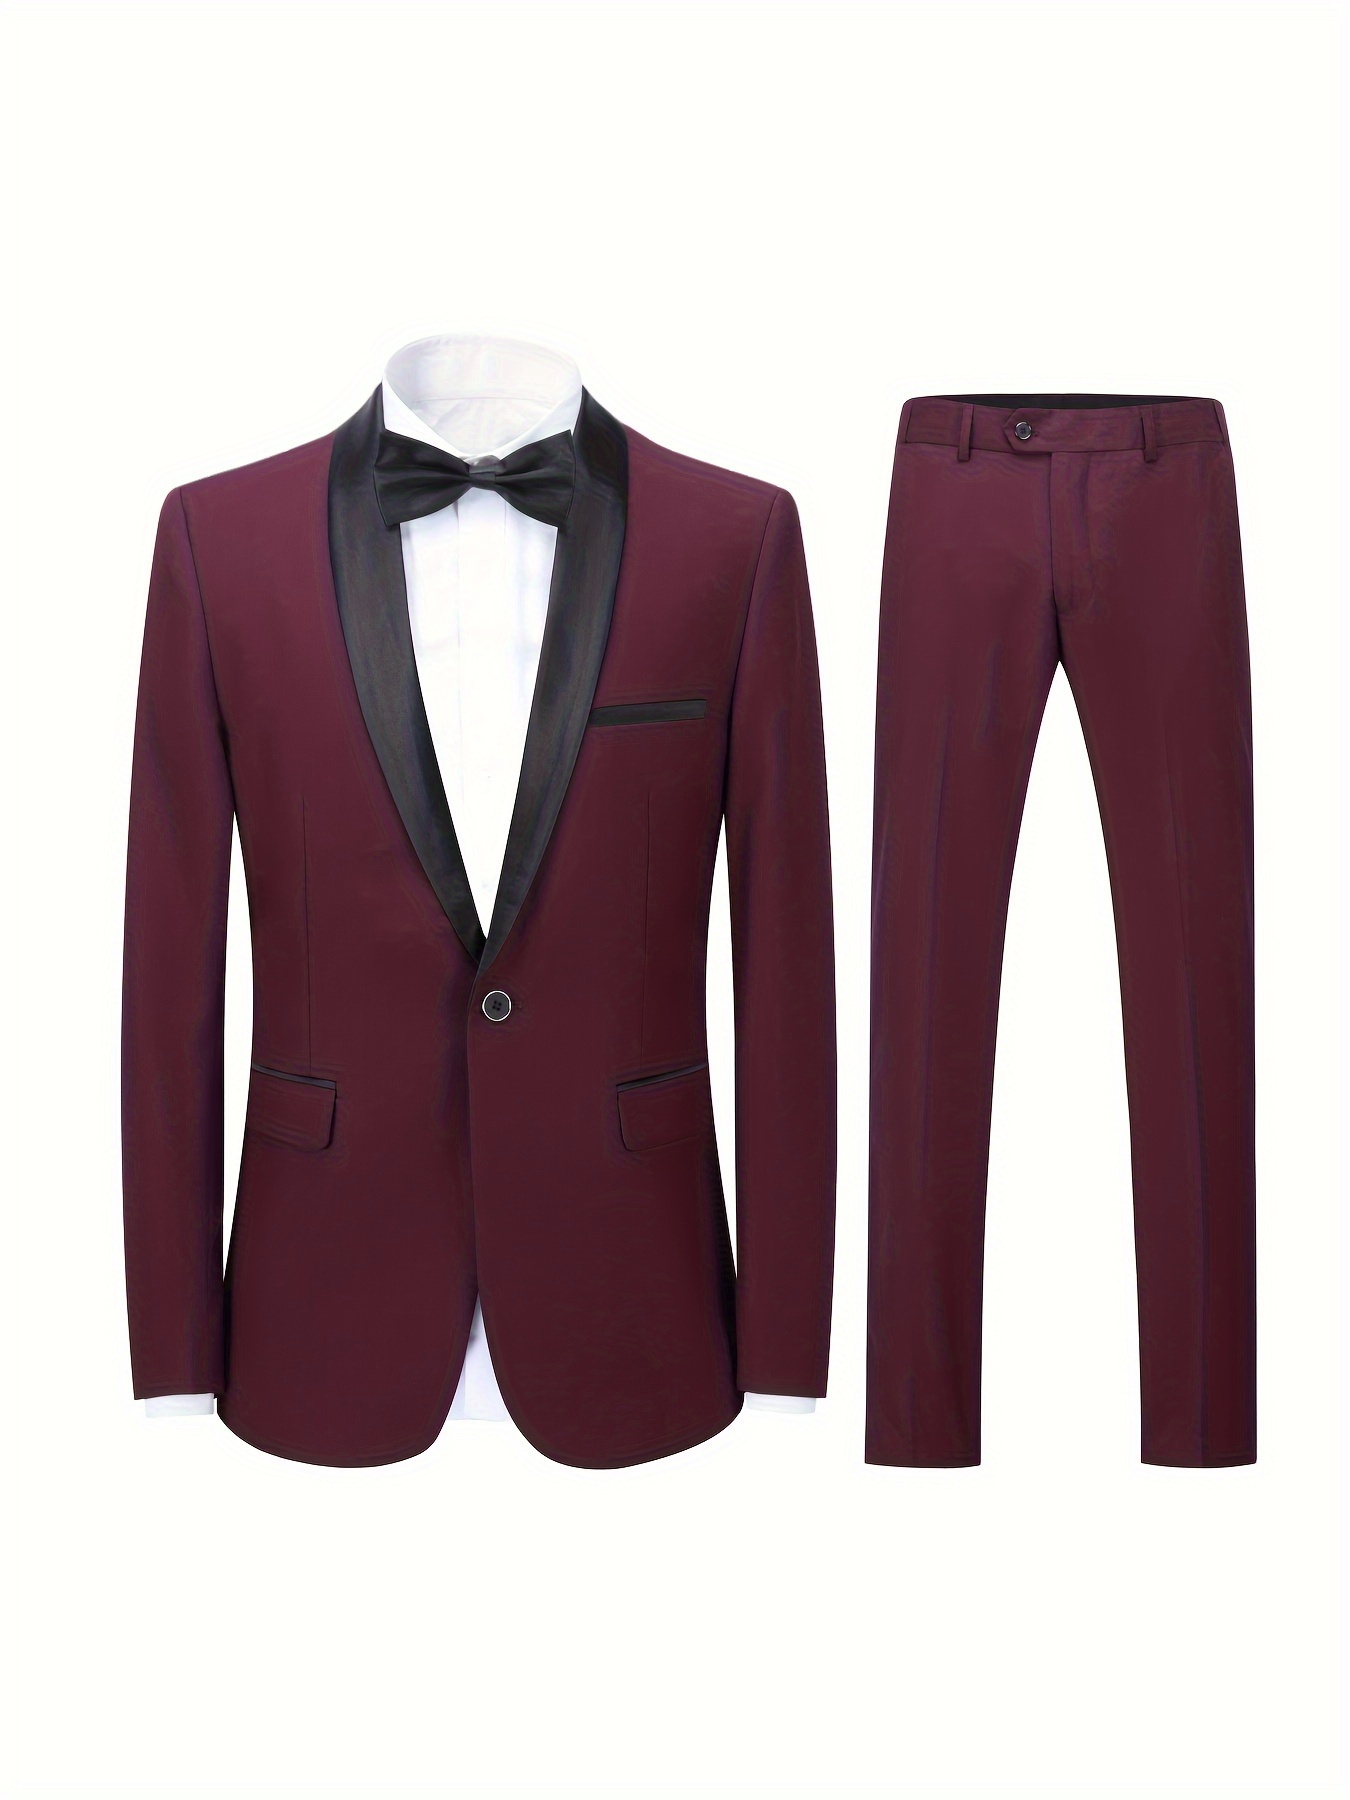 Formal 2pcs Set, Men's One Button Suit Jacket & Dress Pants Suit Set For  Business Dinner Wedding Party